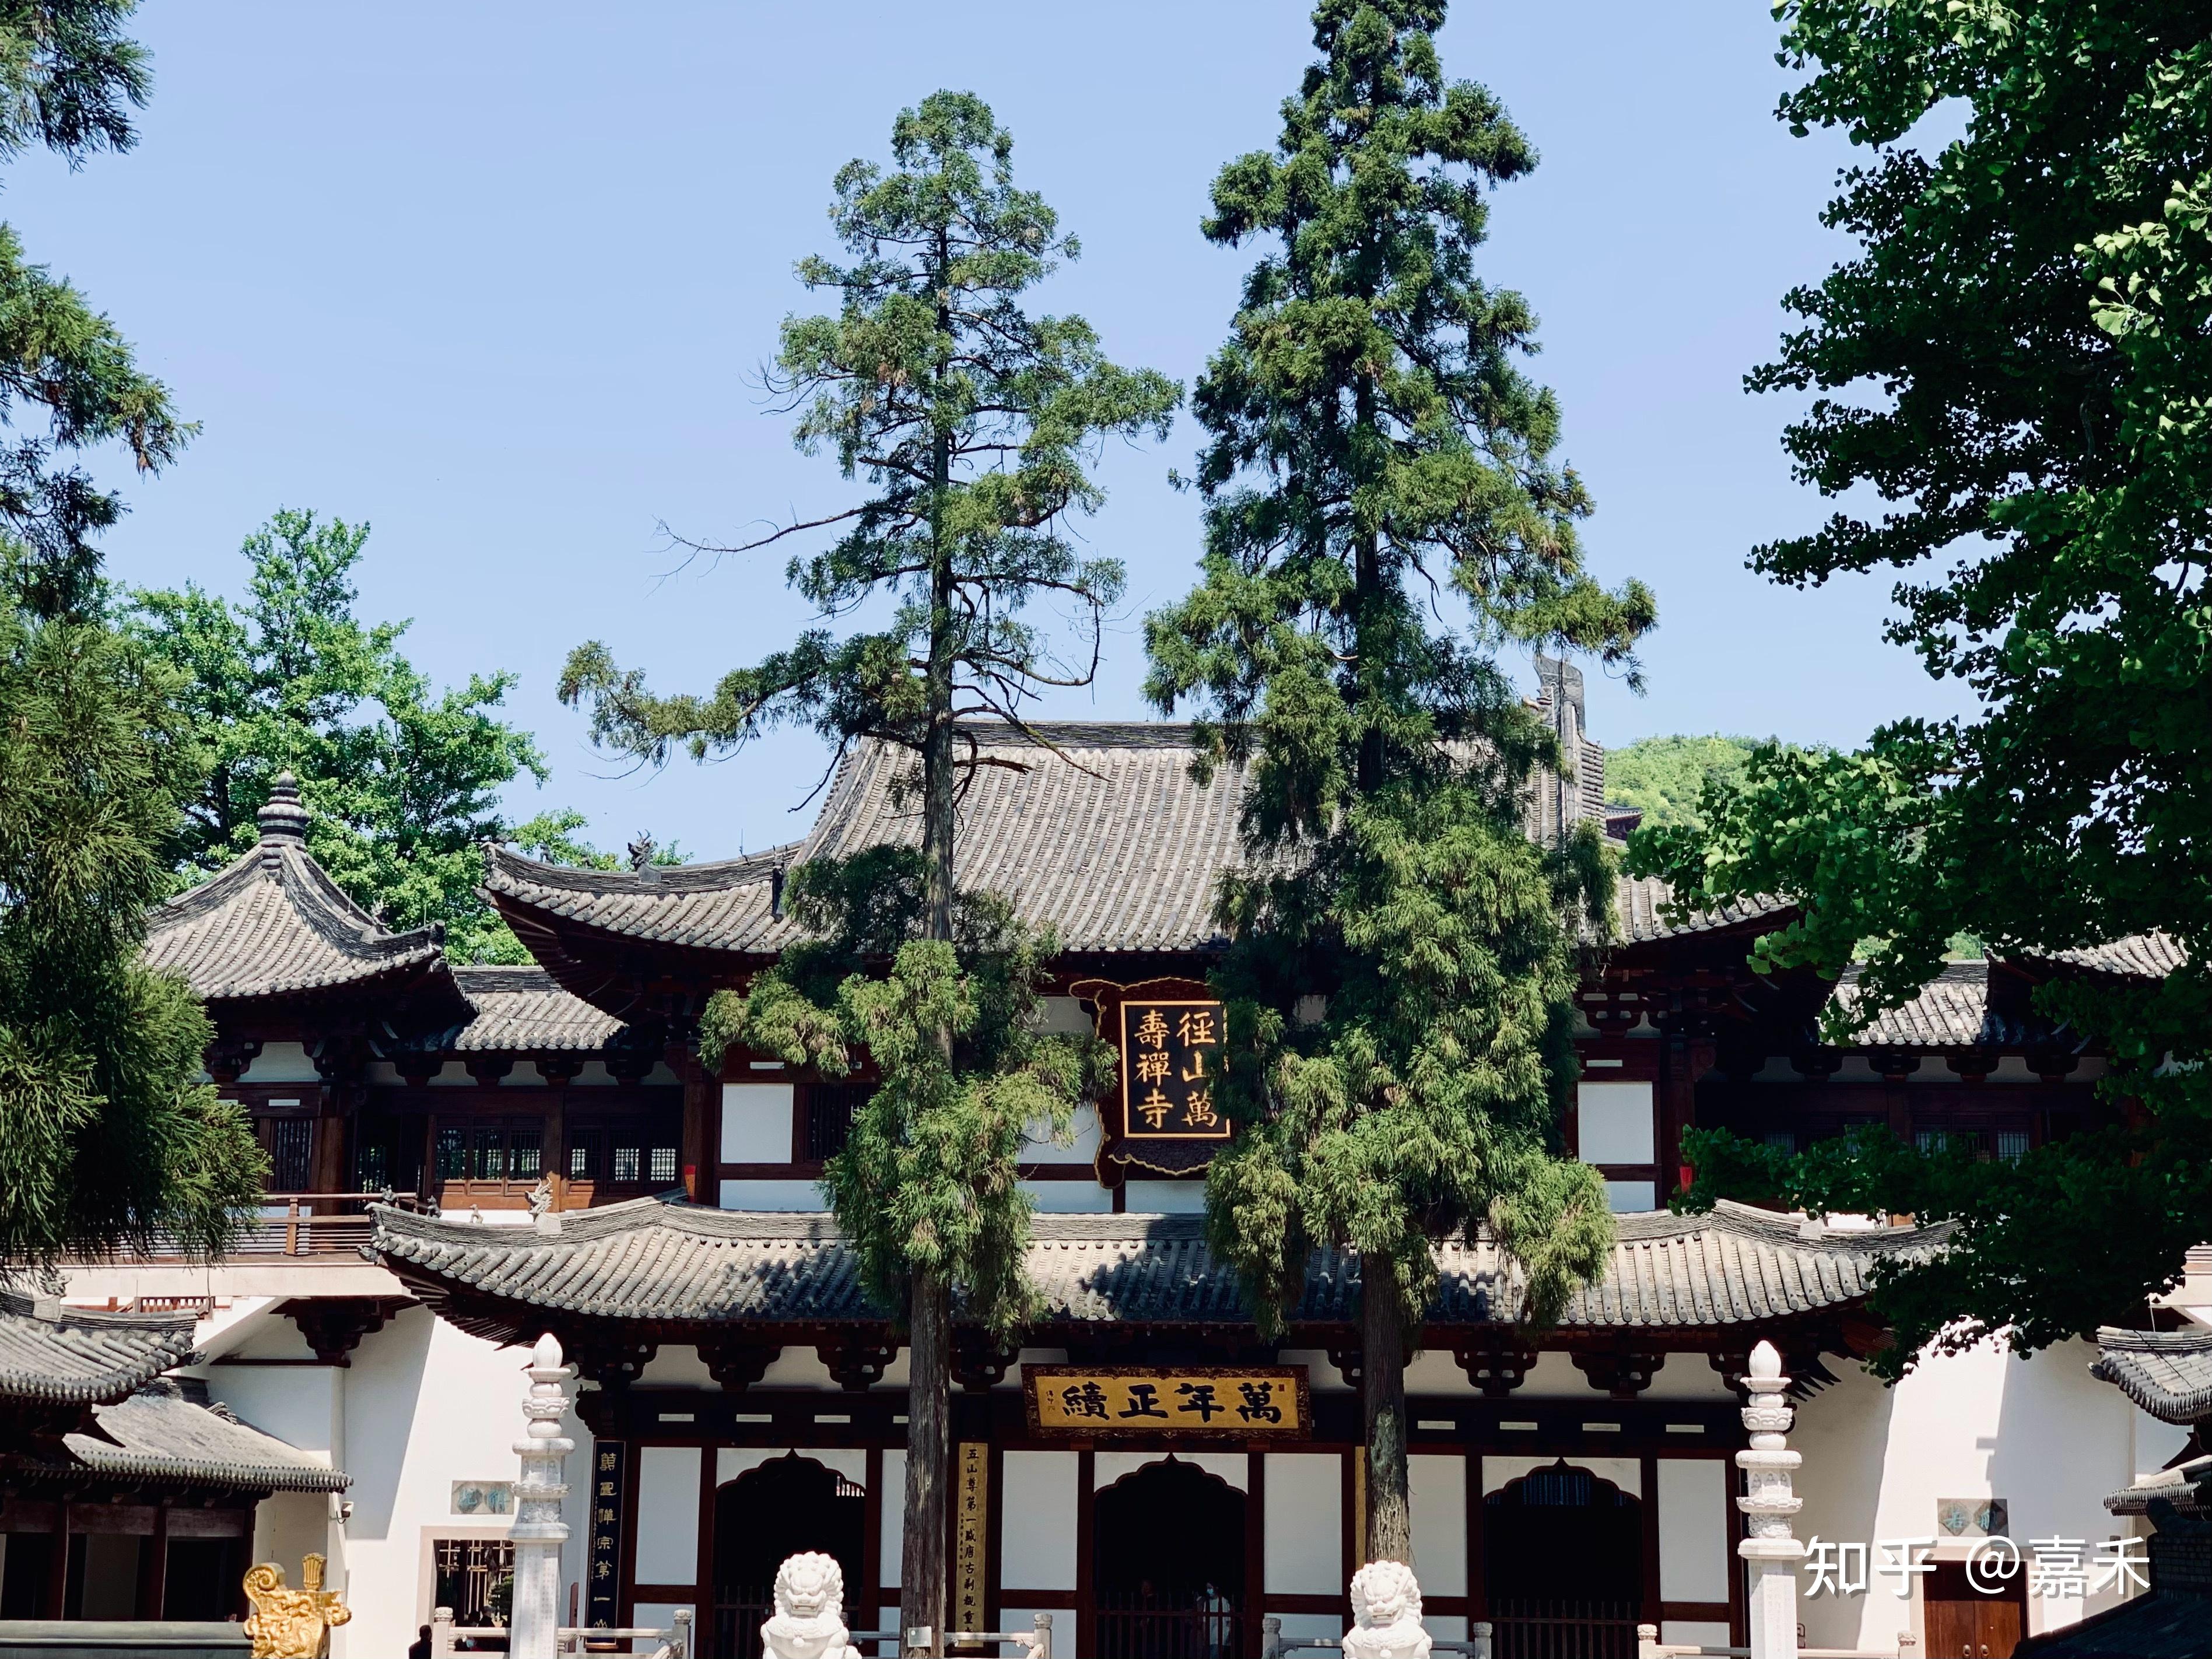 杭州的径山寺新建的古建筑到底是仿日本还是仿宋朝建筑